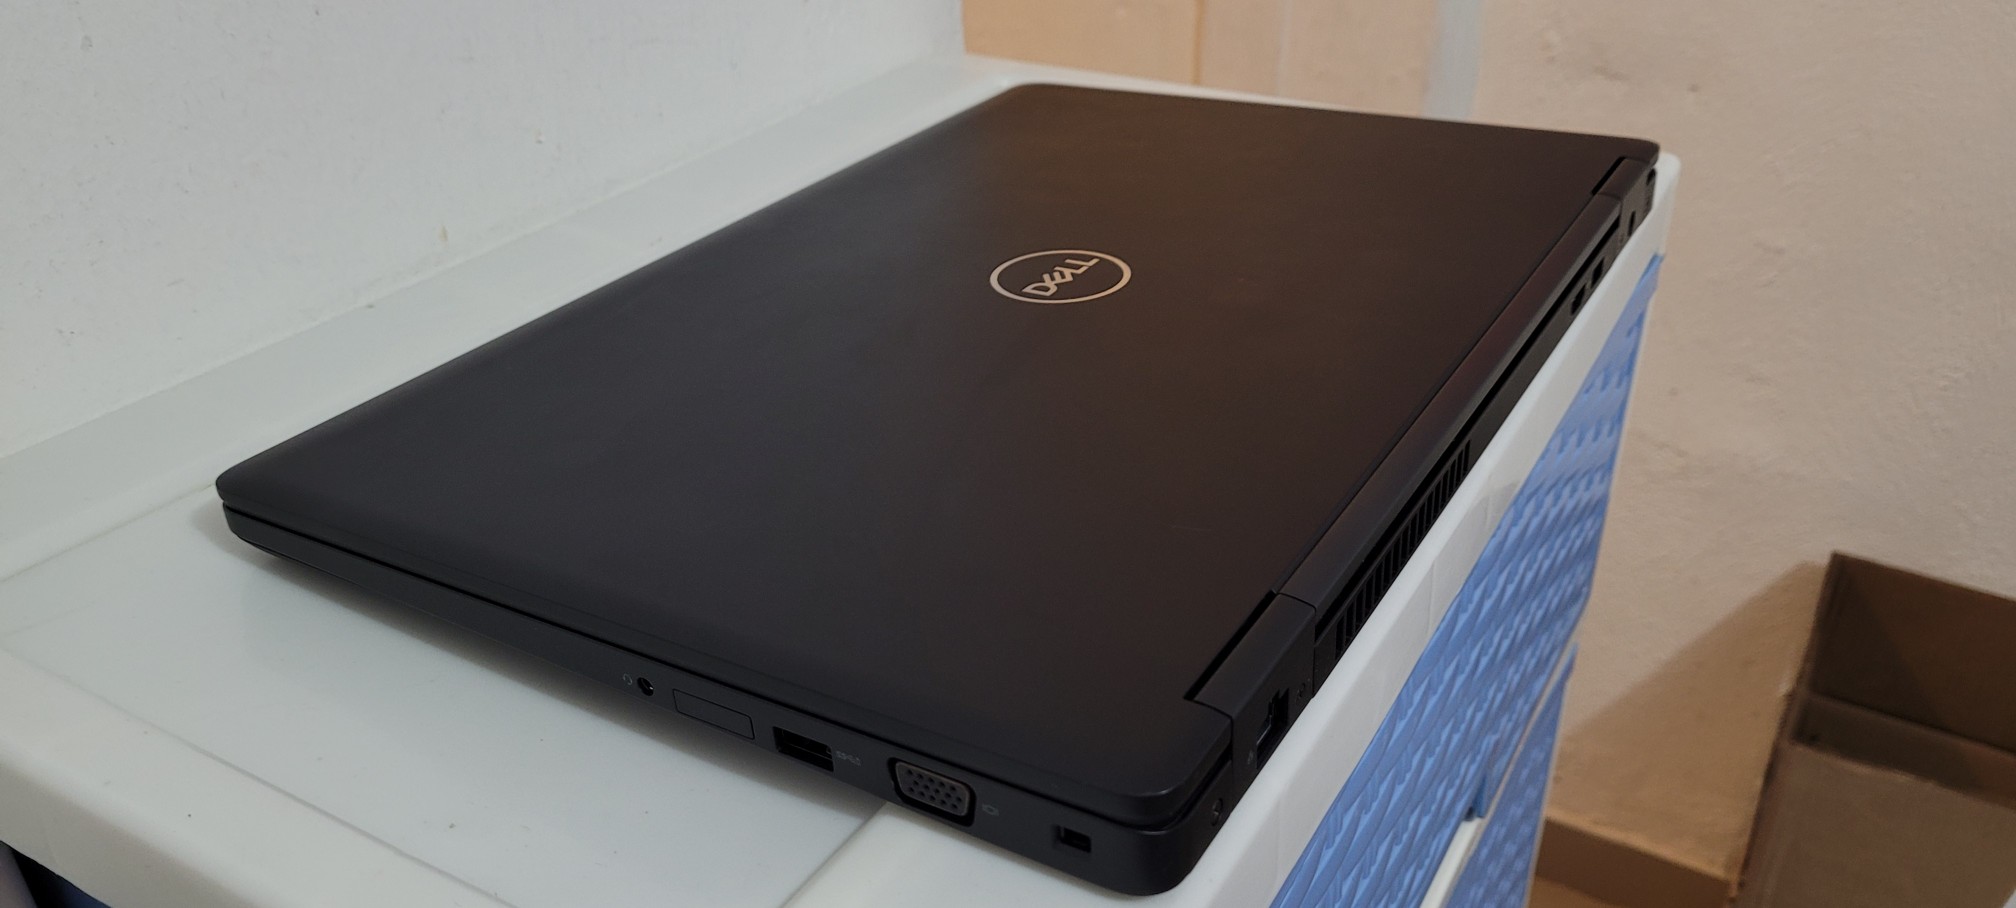 computadoras y laptops - Dell 5580 17 Pulg Core i5 7ma Gen Ram 8gb ddr4 Disco 128gb hdmi Wifi 2